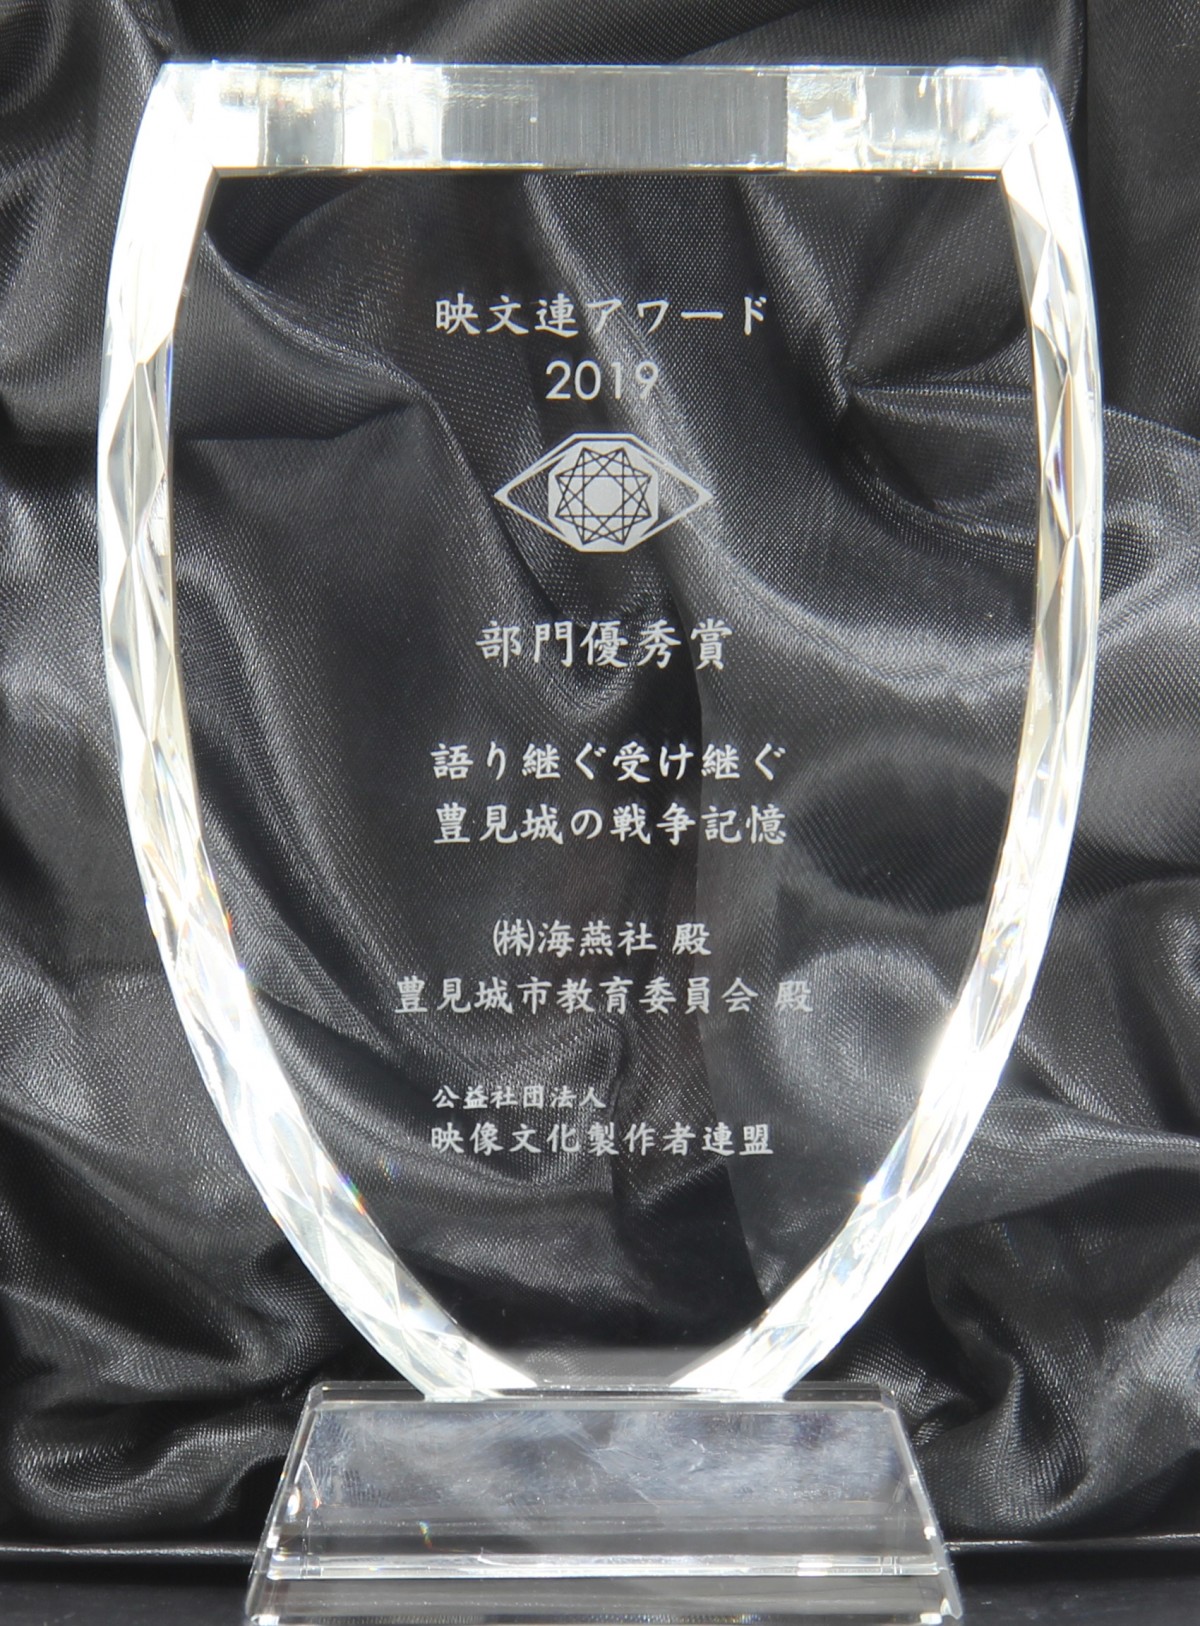 映文連アワード2019部門優秀賞の刻印が刻まれた透明な盾の写真